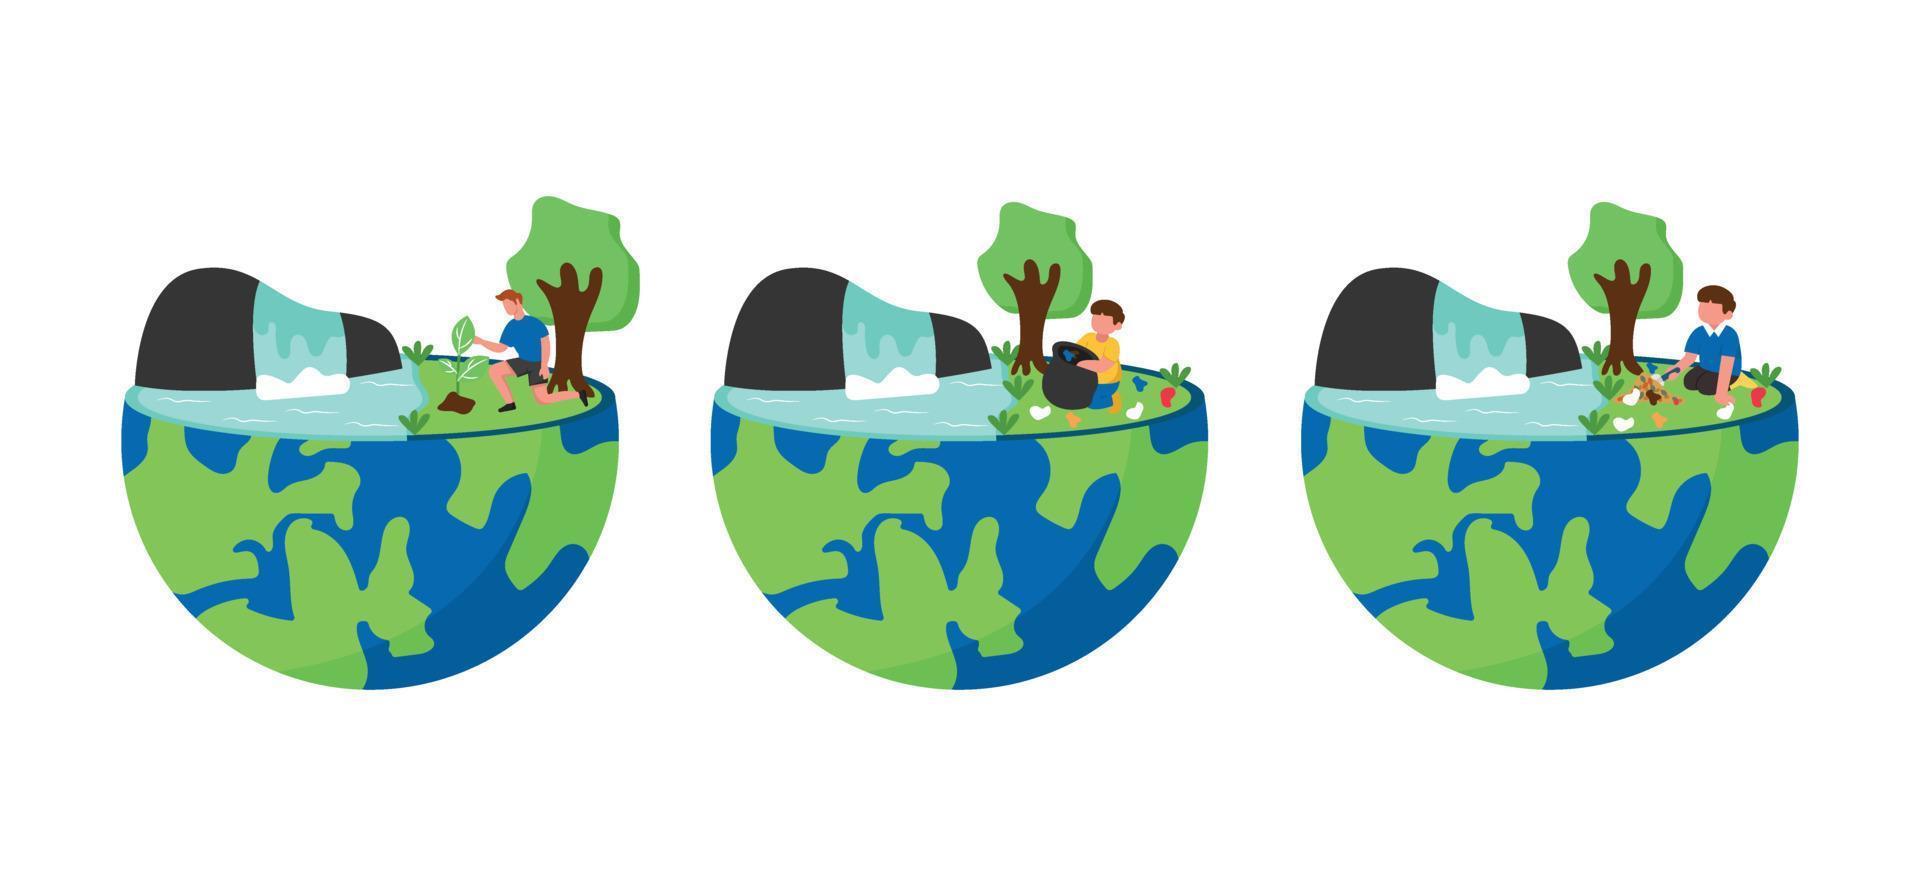 Earth Day Flat Bundle Design Illustration vector